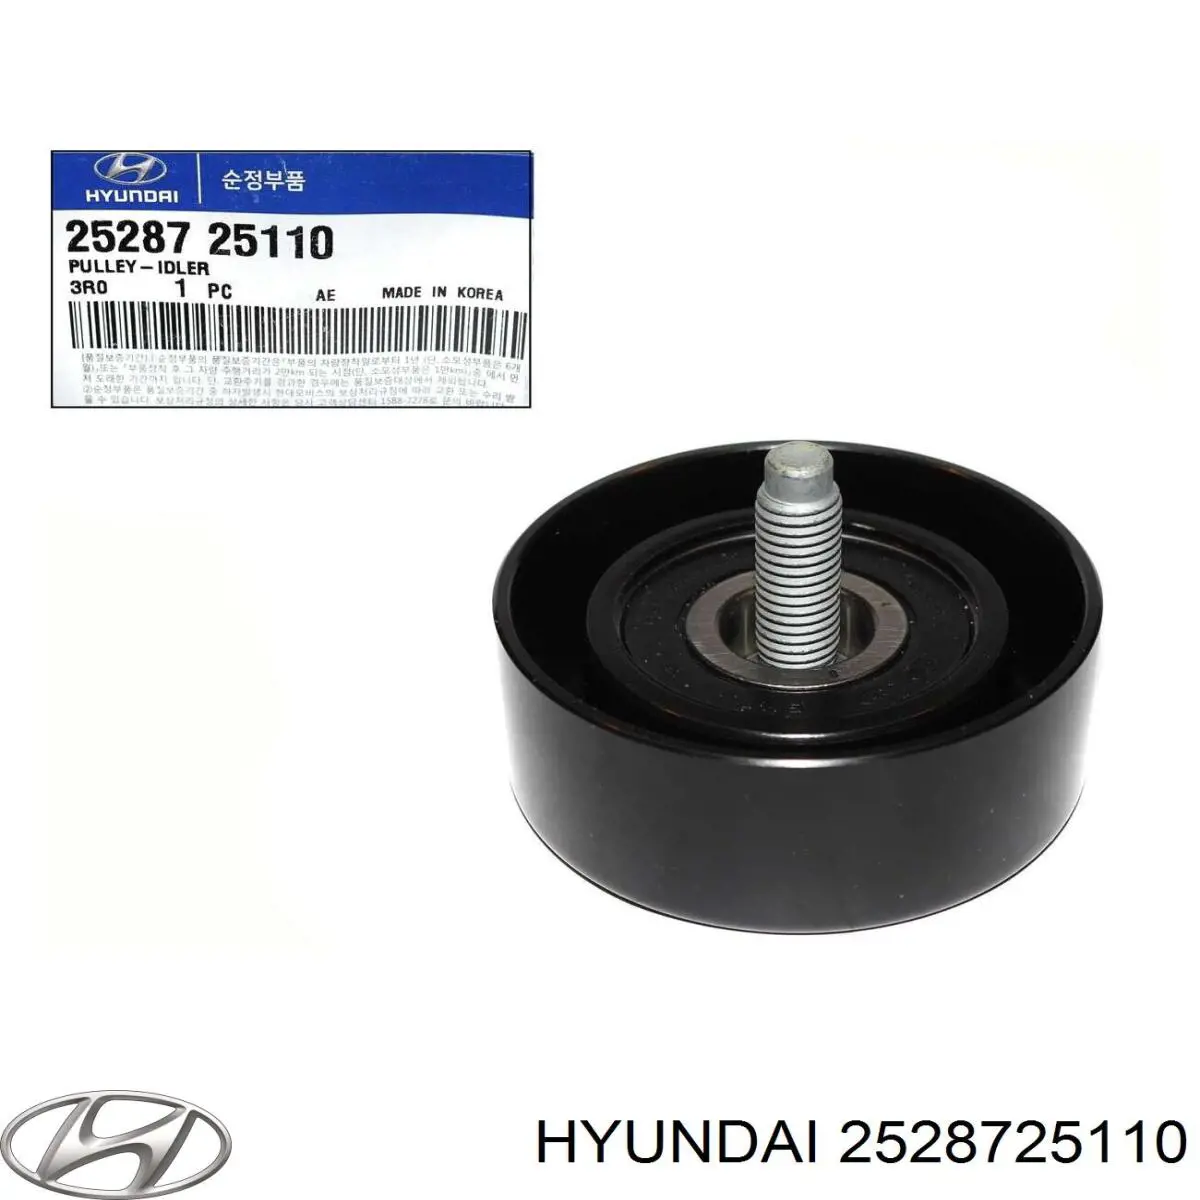 2528725110 Hyundai/Kia rolo parasita da correia de transmissão